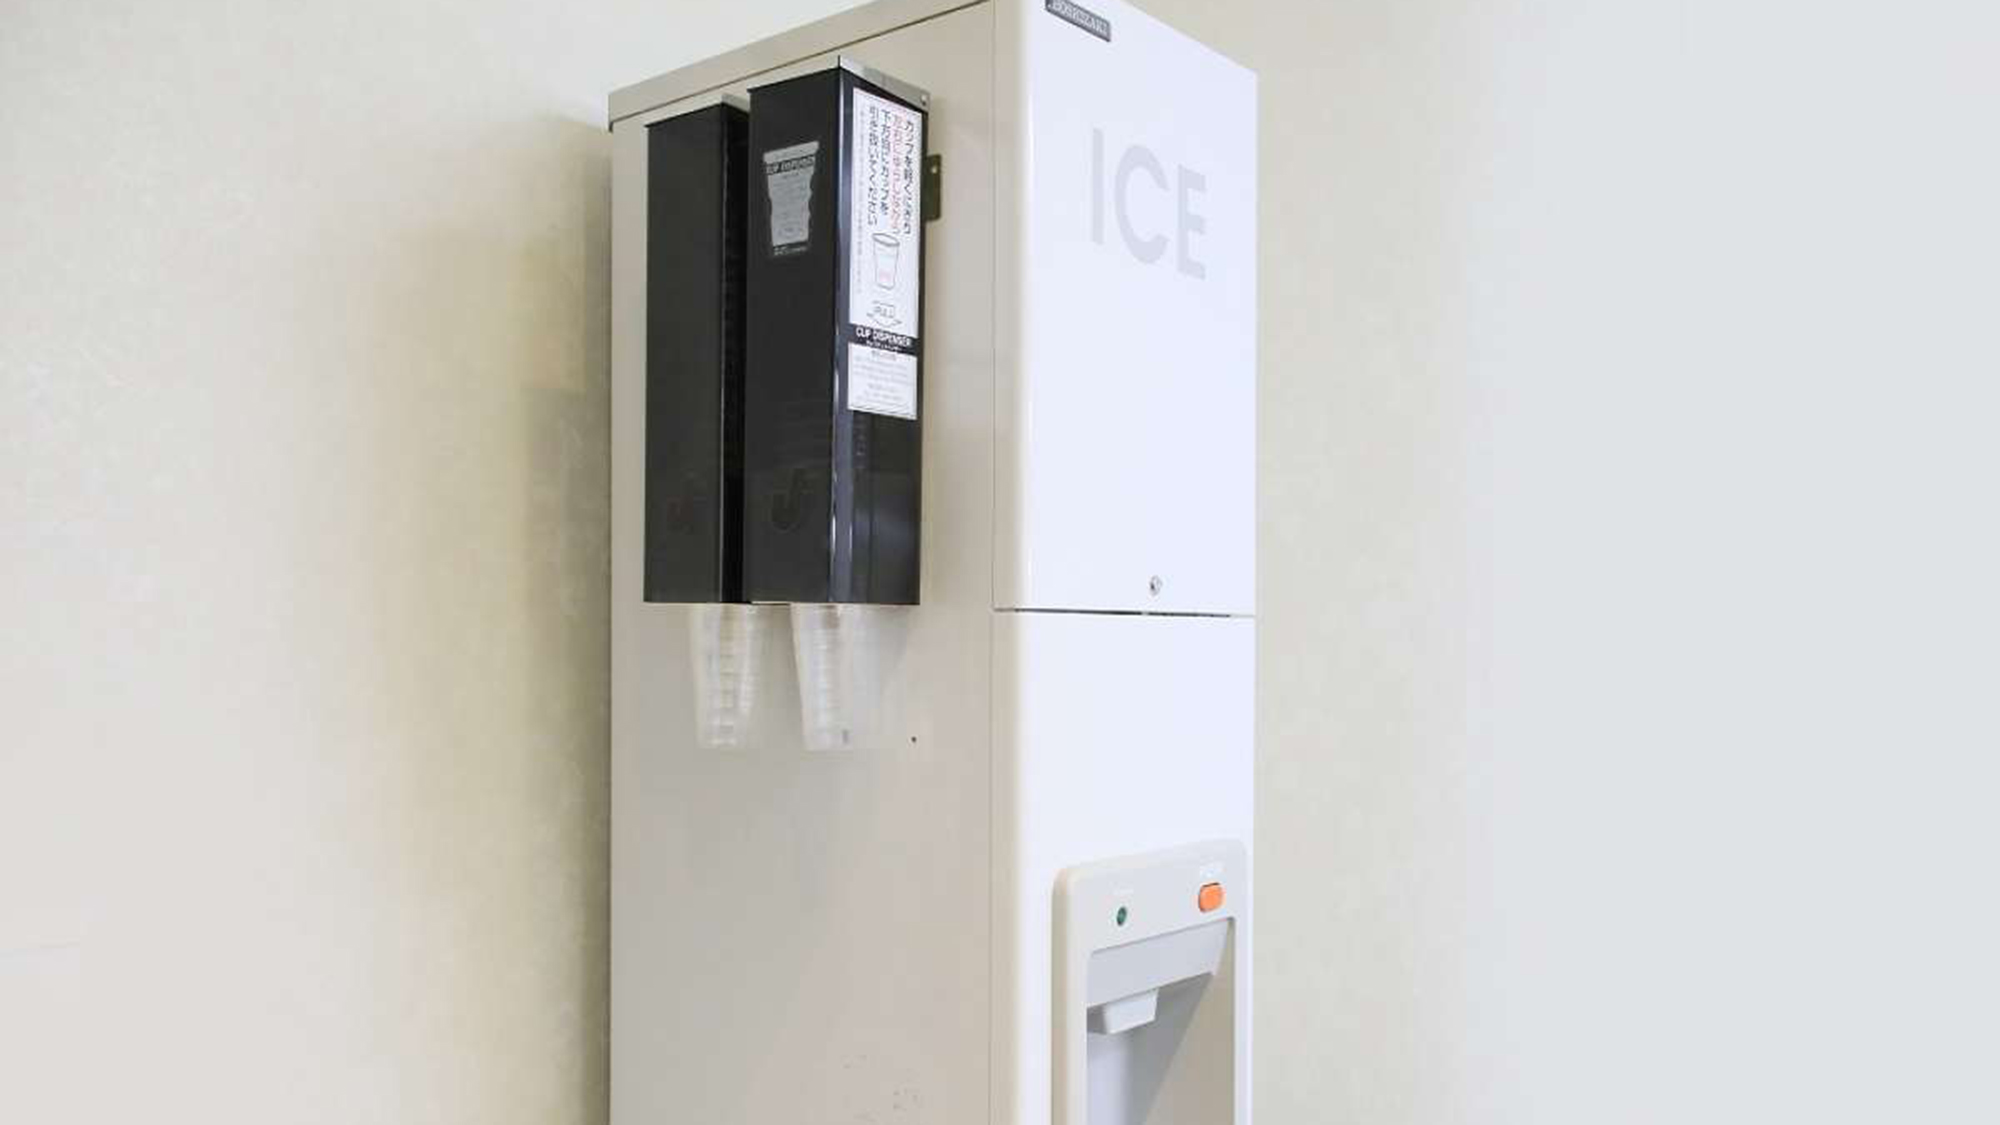 製氷機(氷は備え付けのカップをご利用ください)11階にございます